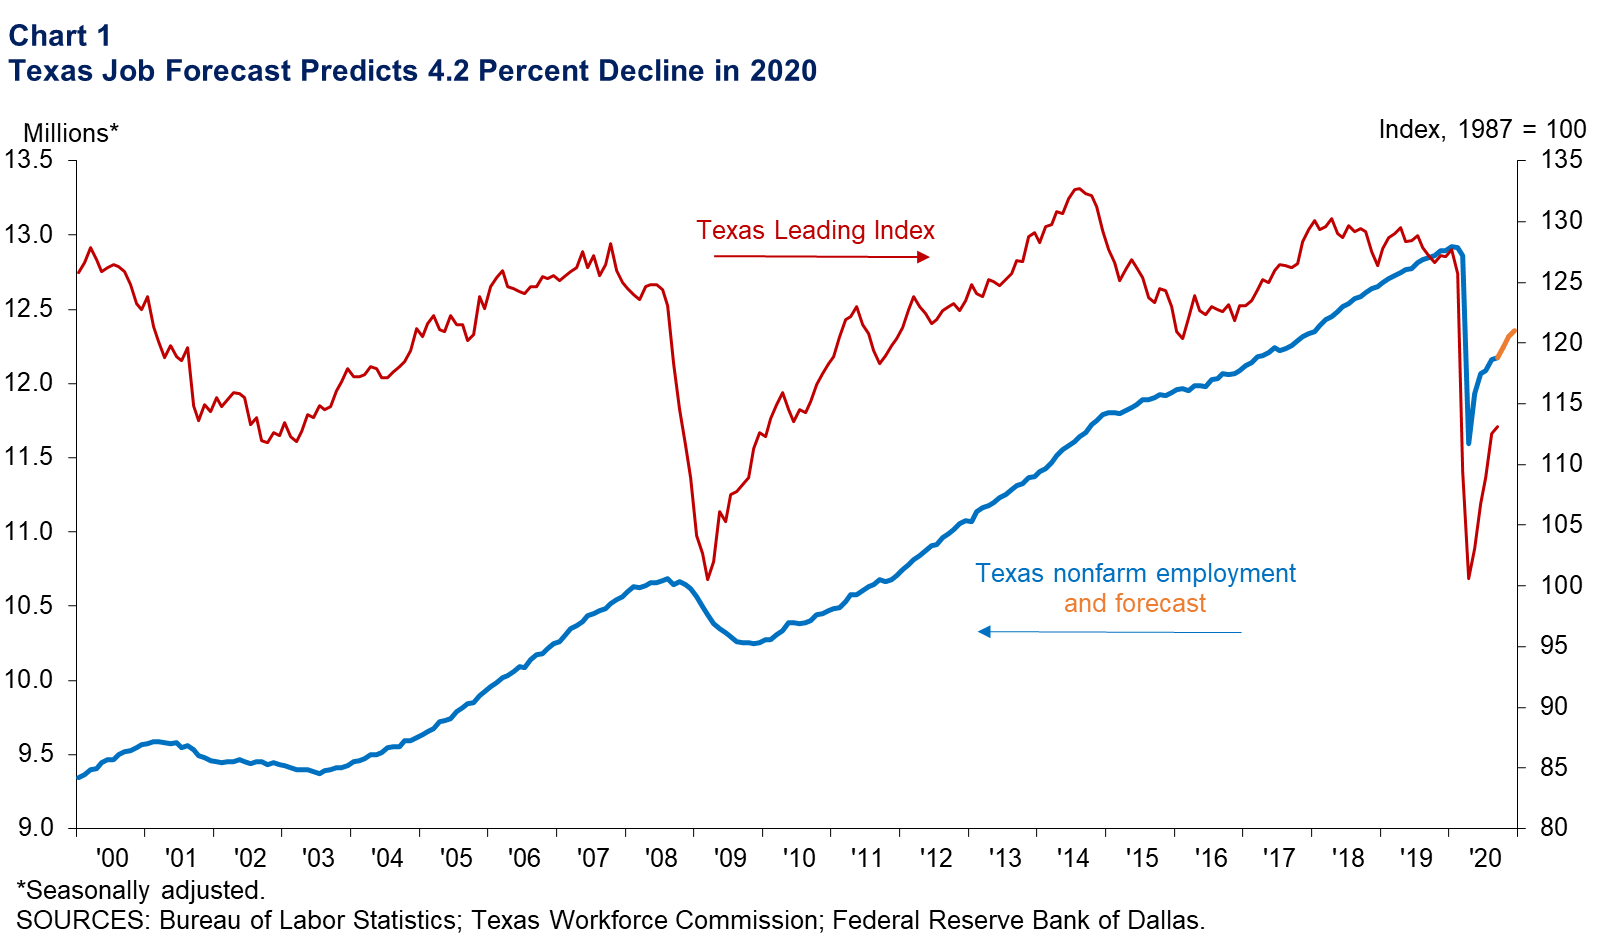 Texas Job Forecast Predicts 4.2 Percent Decline in 2020